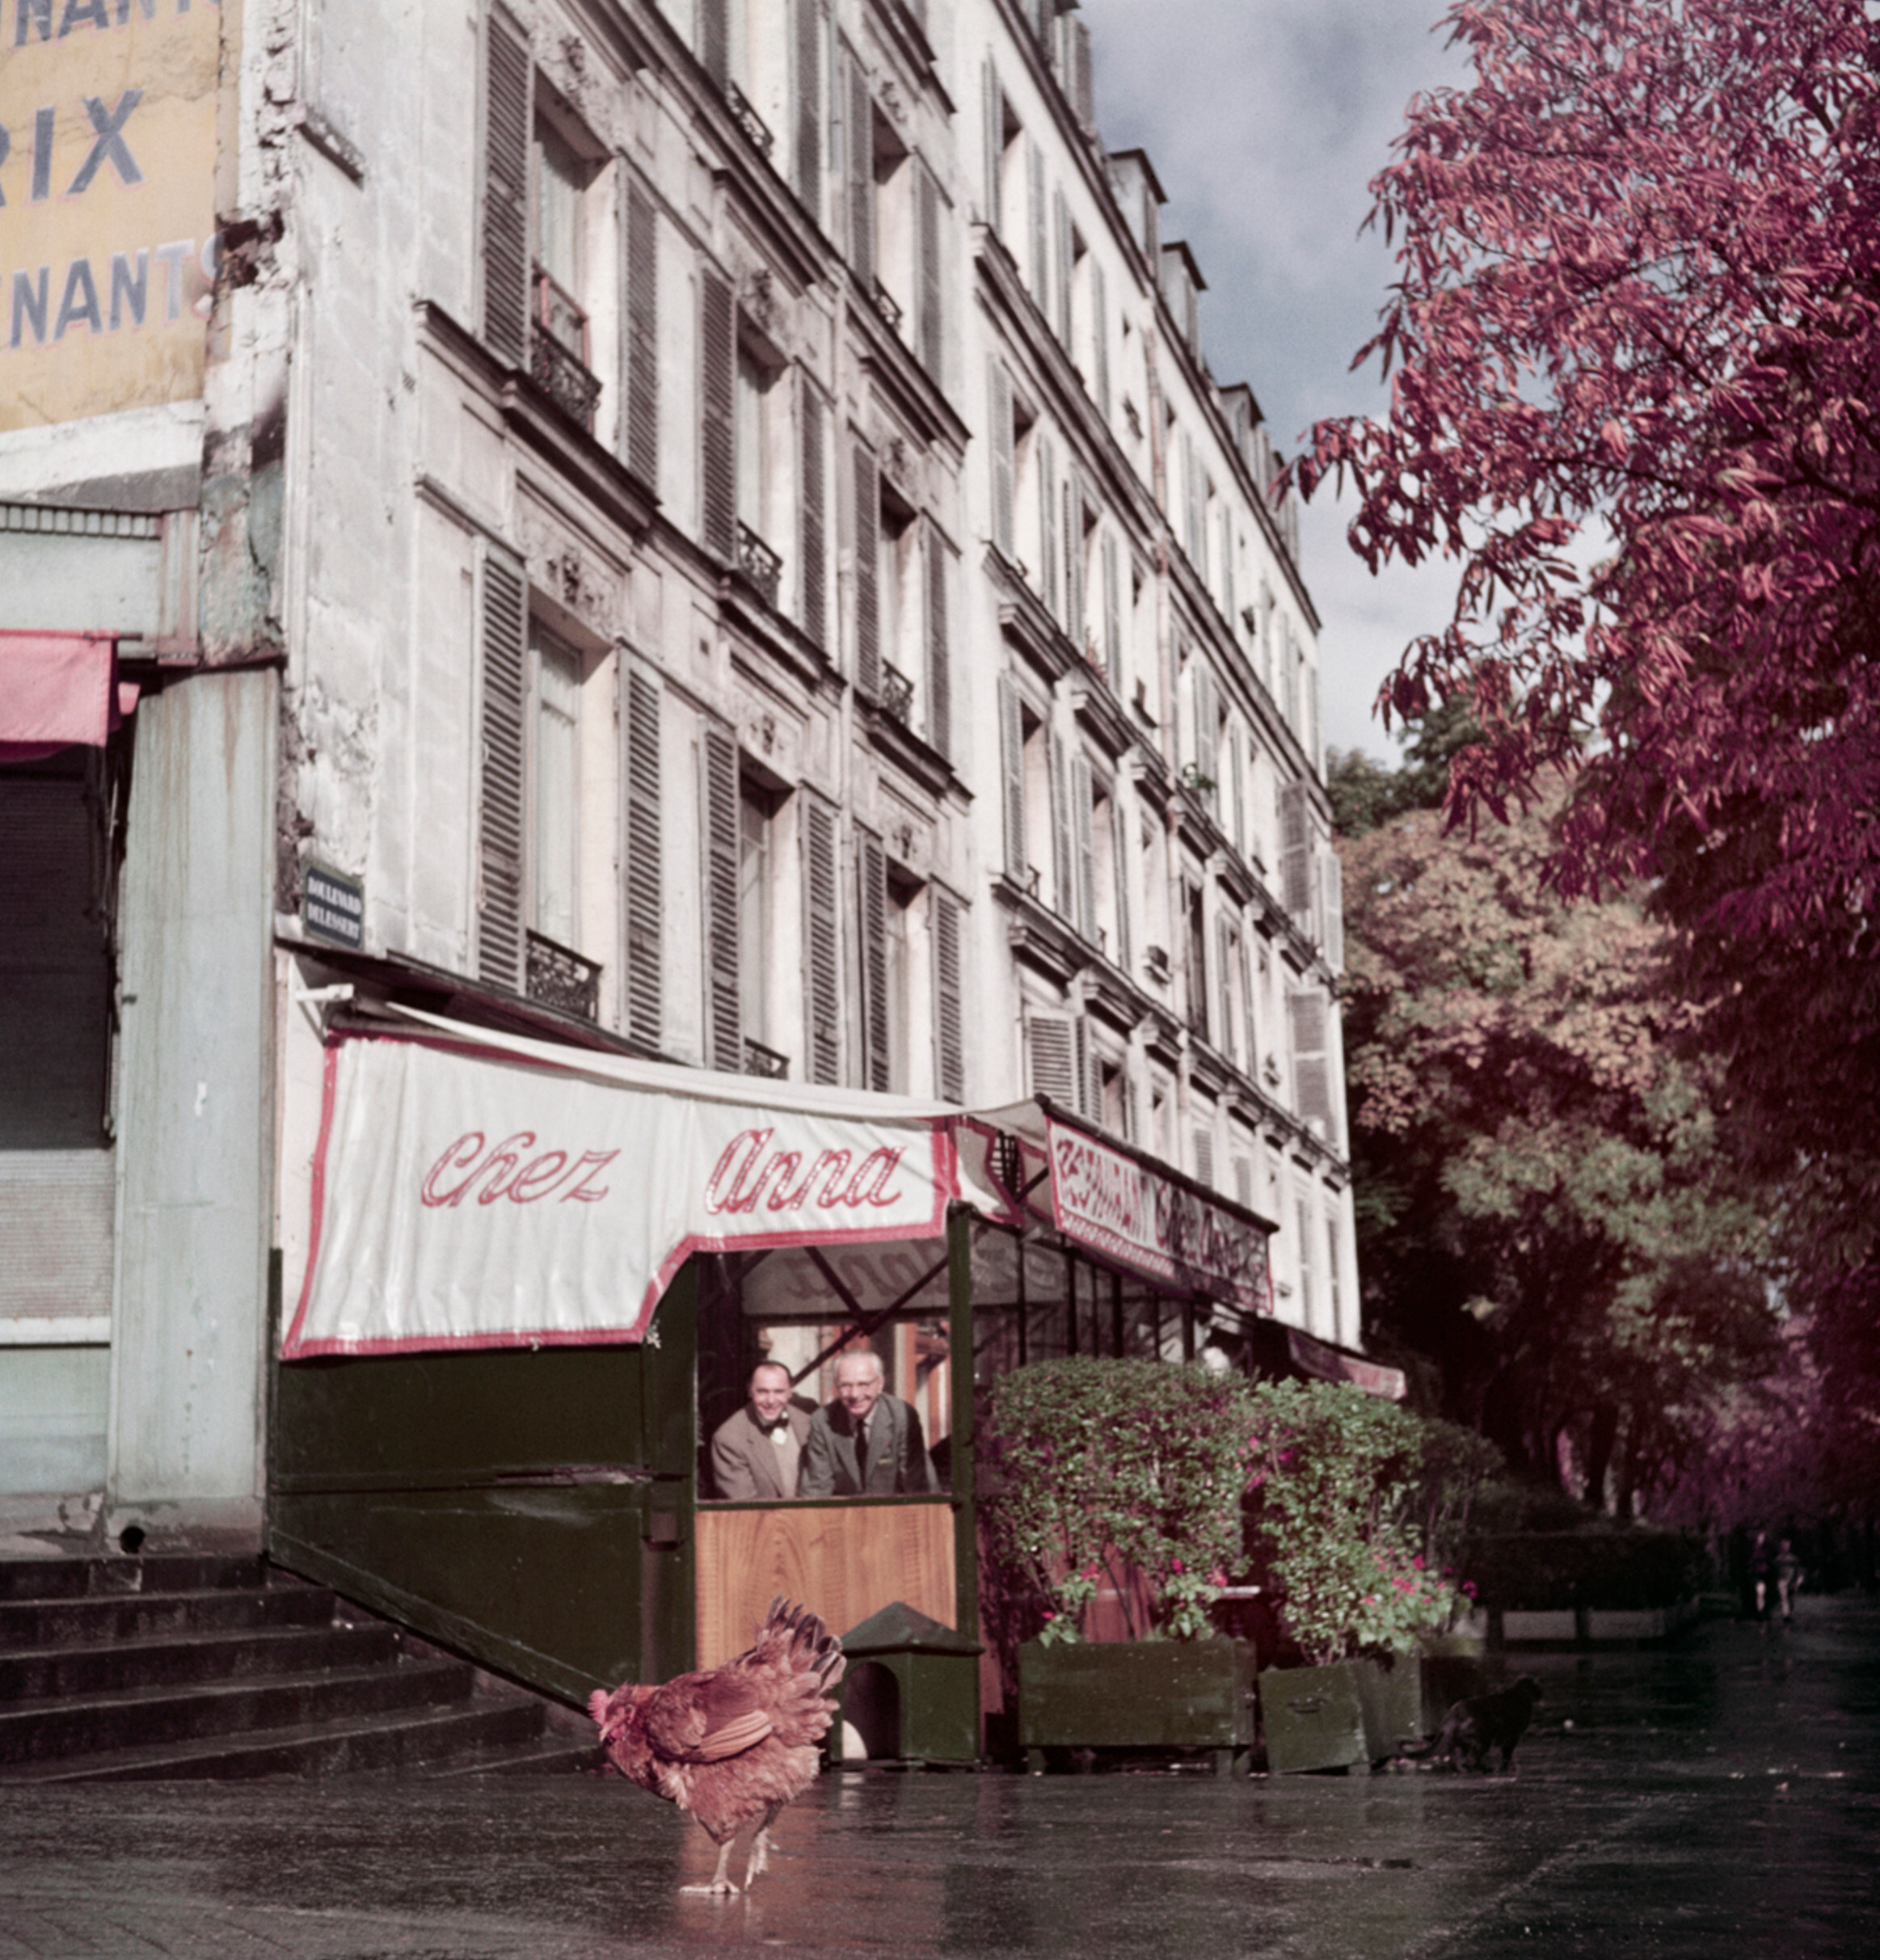 Курица возле ресторана Chez Anna, Париж, примерно 1952 год.  Фотограф Роберт Капа